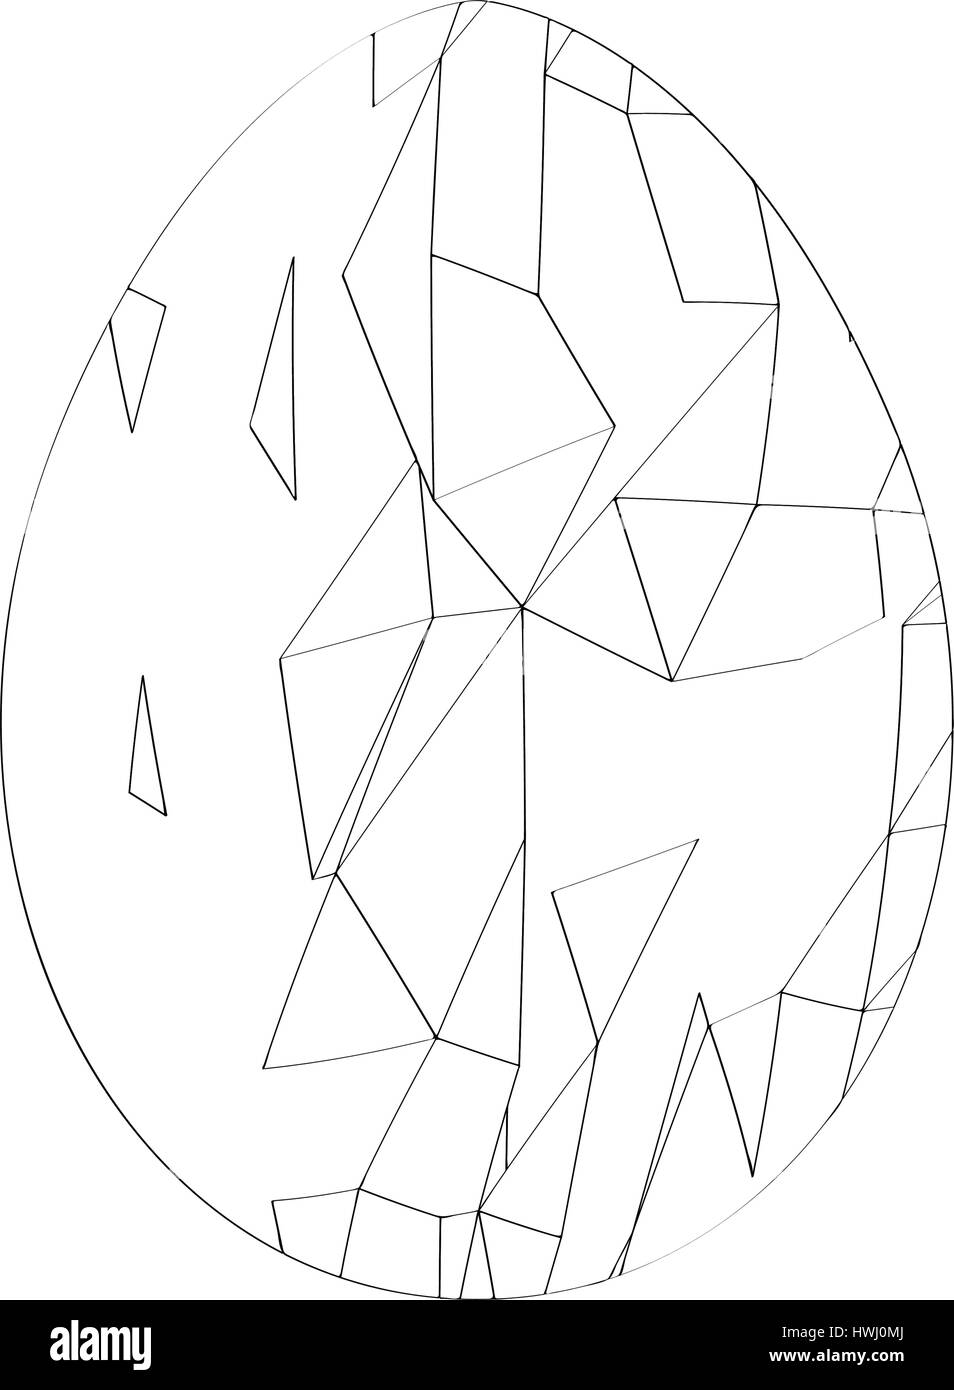 Isolato di uova di pasqua Illustrazione Vettoriale